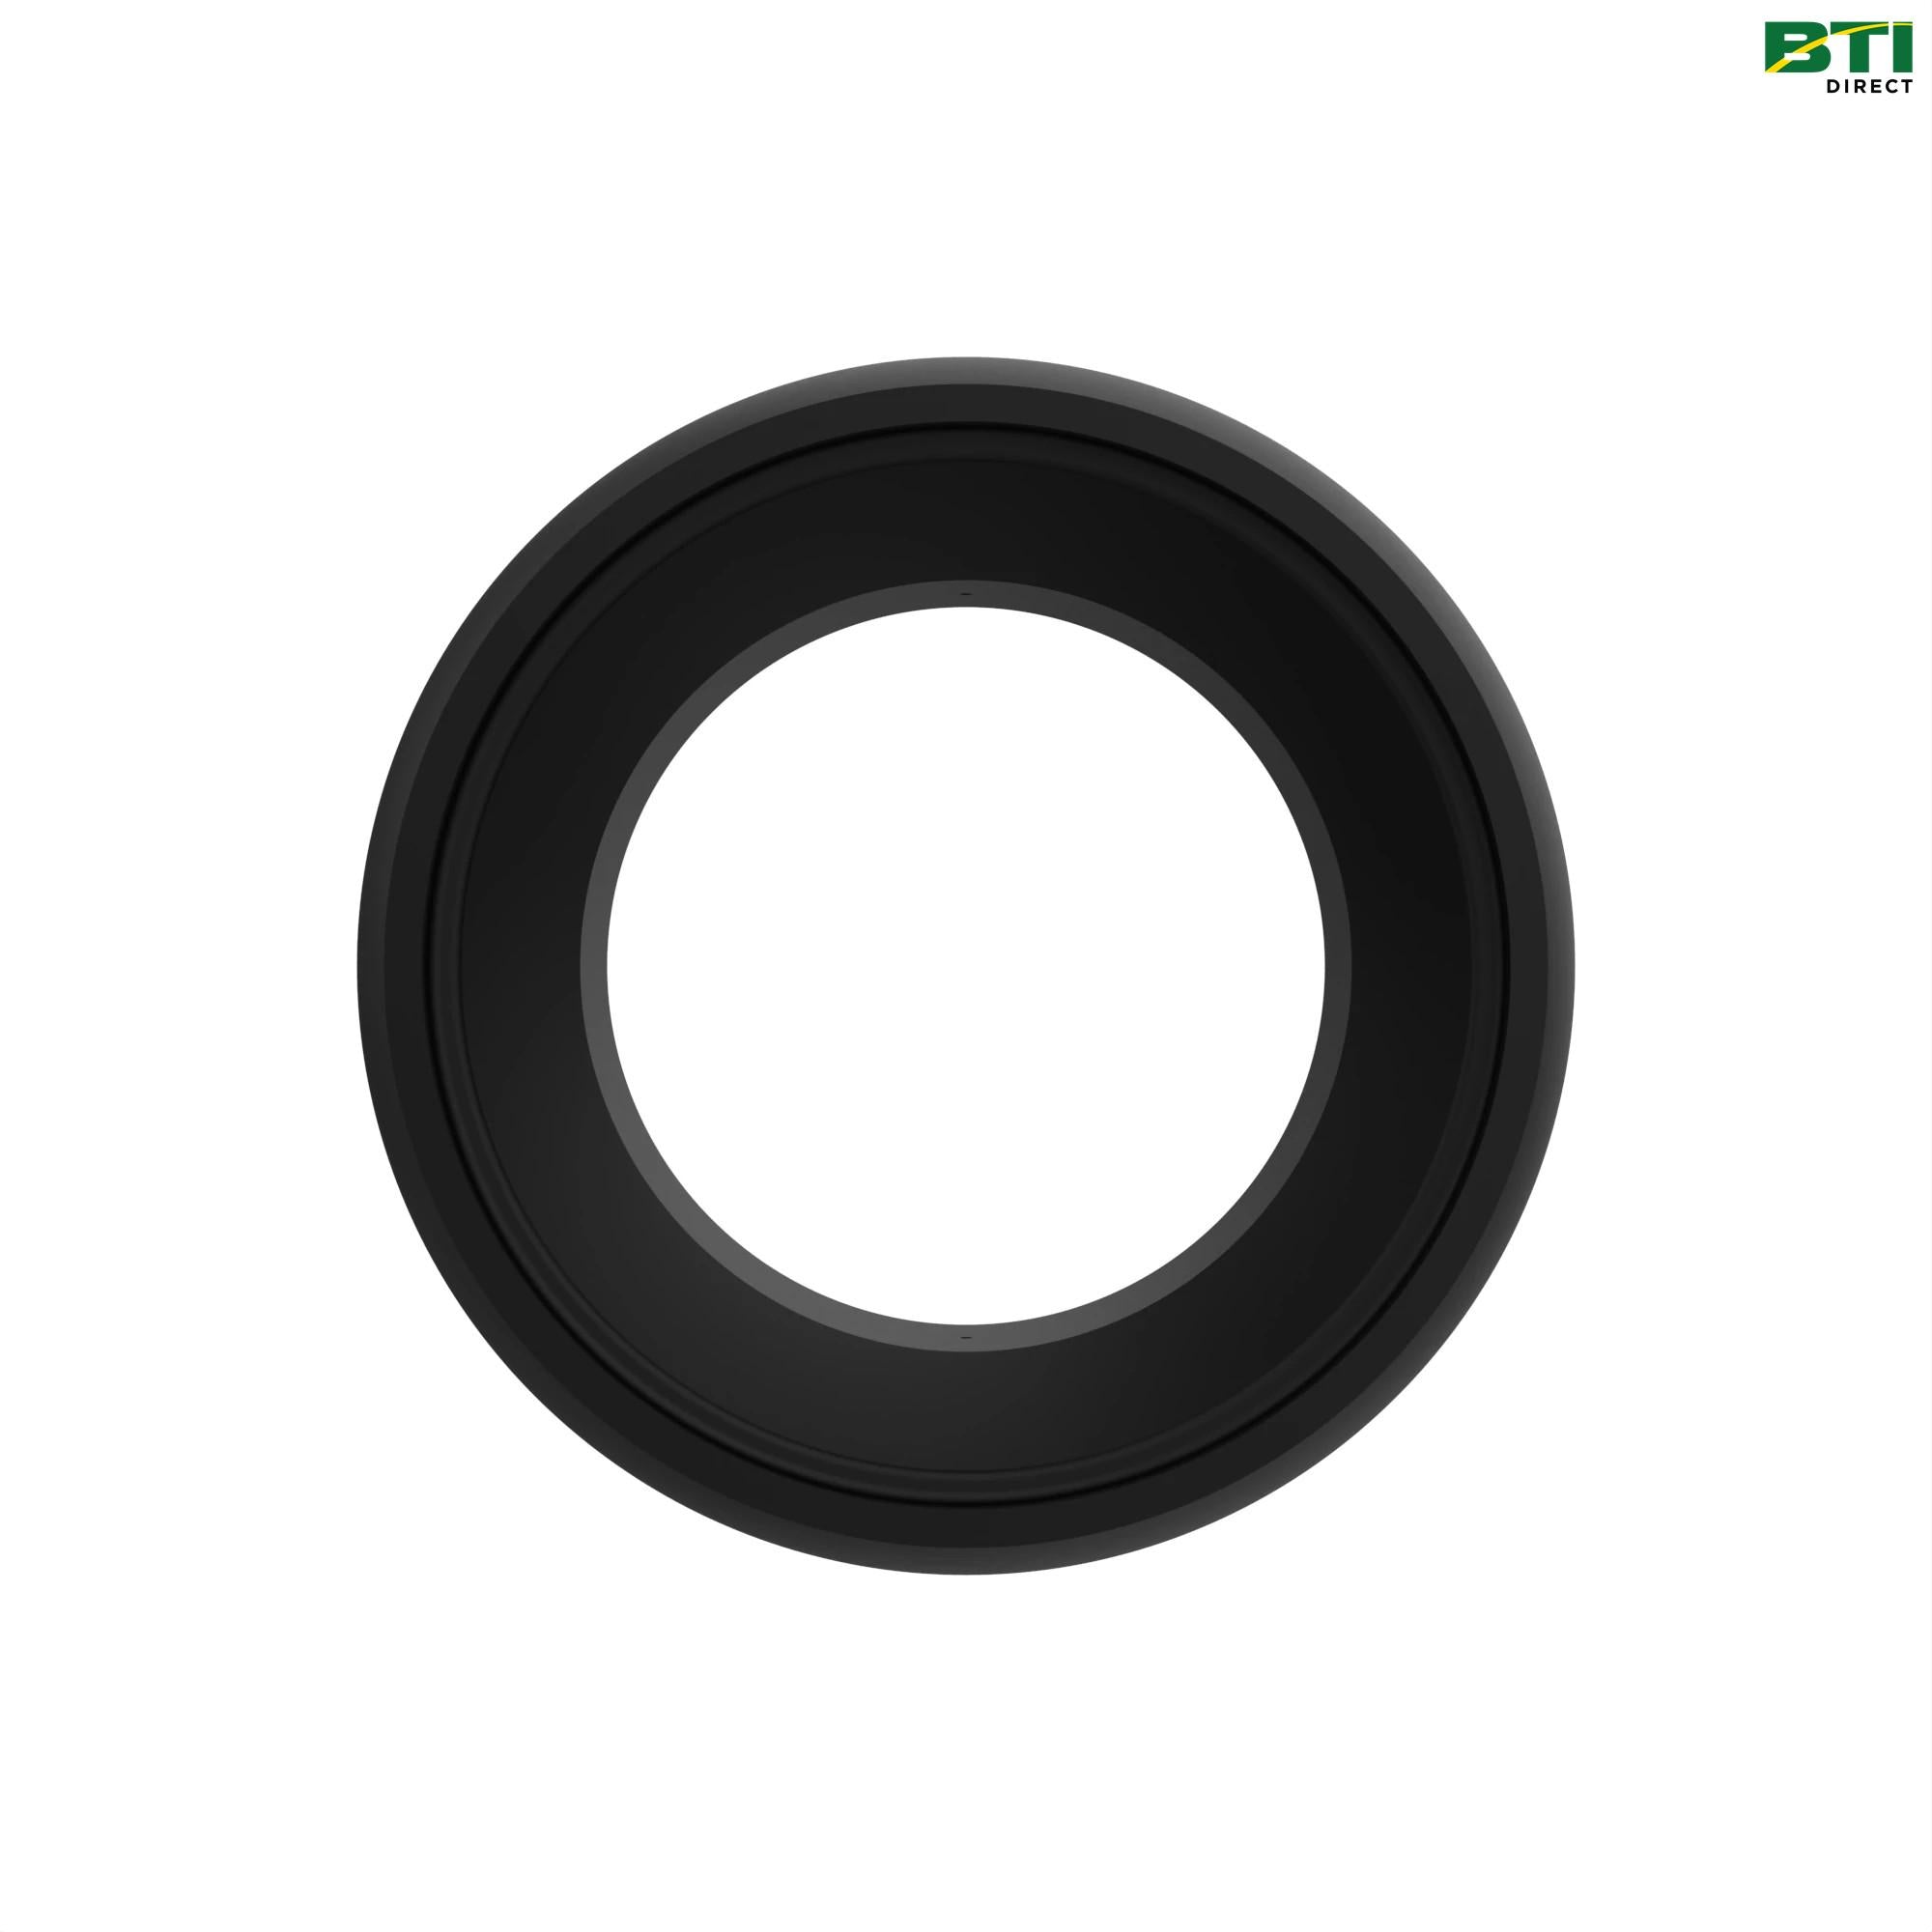 A58851: Disk Closing Attachment Tire, 12 X 6.5